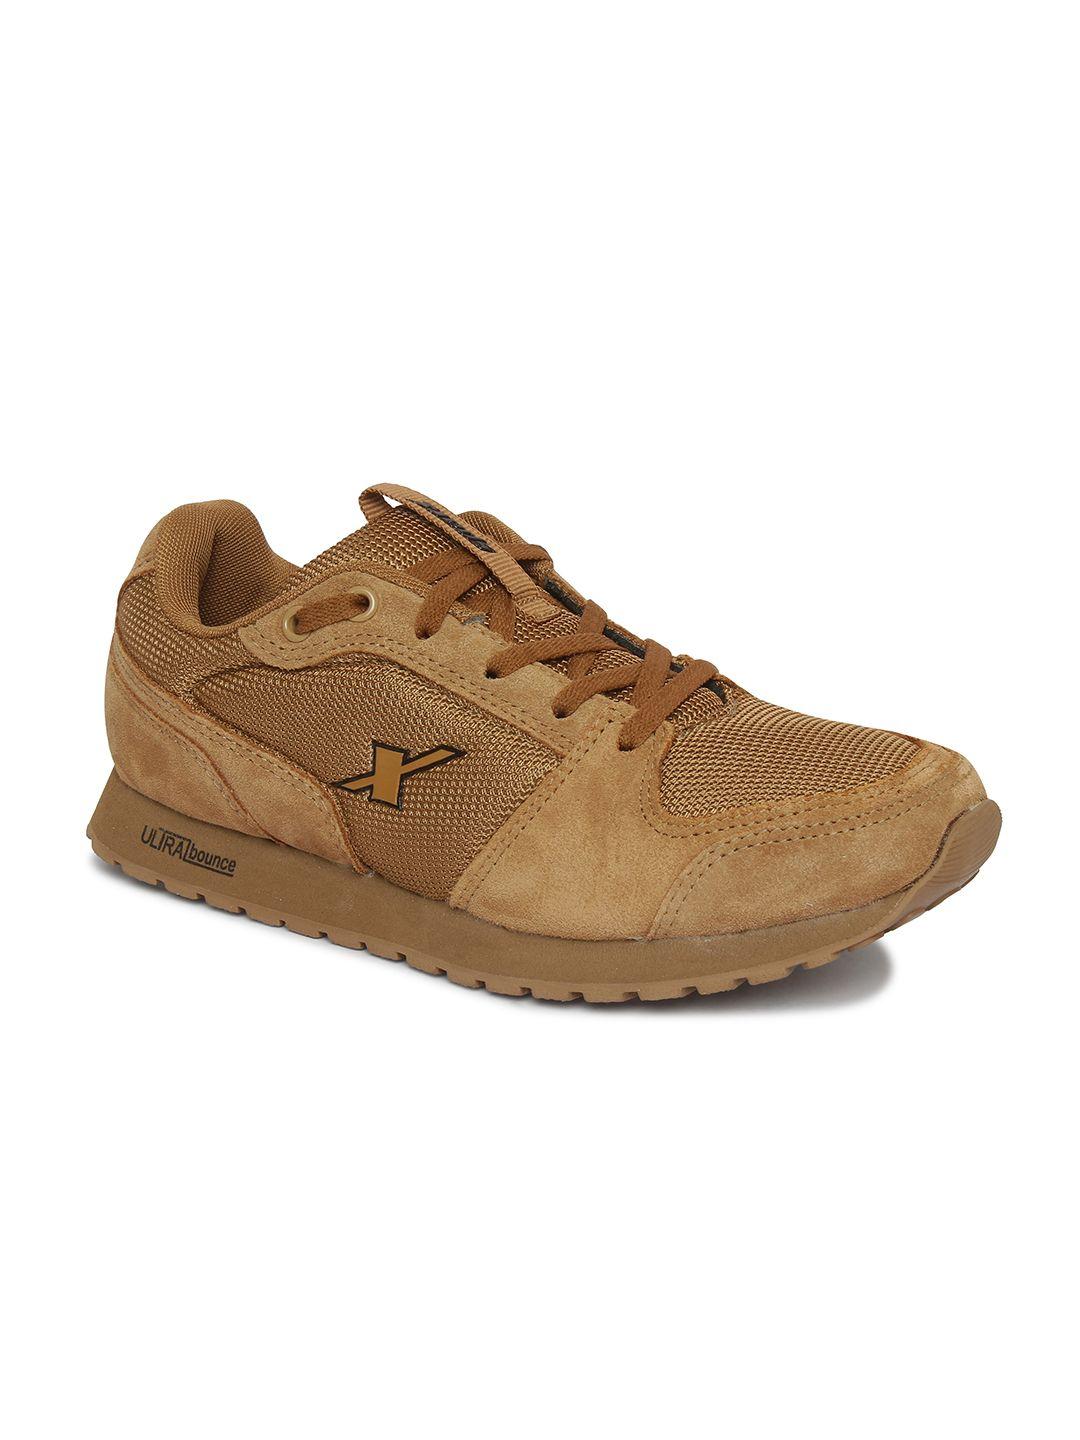 sparx men tan brown running shoes